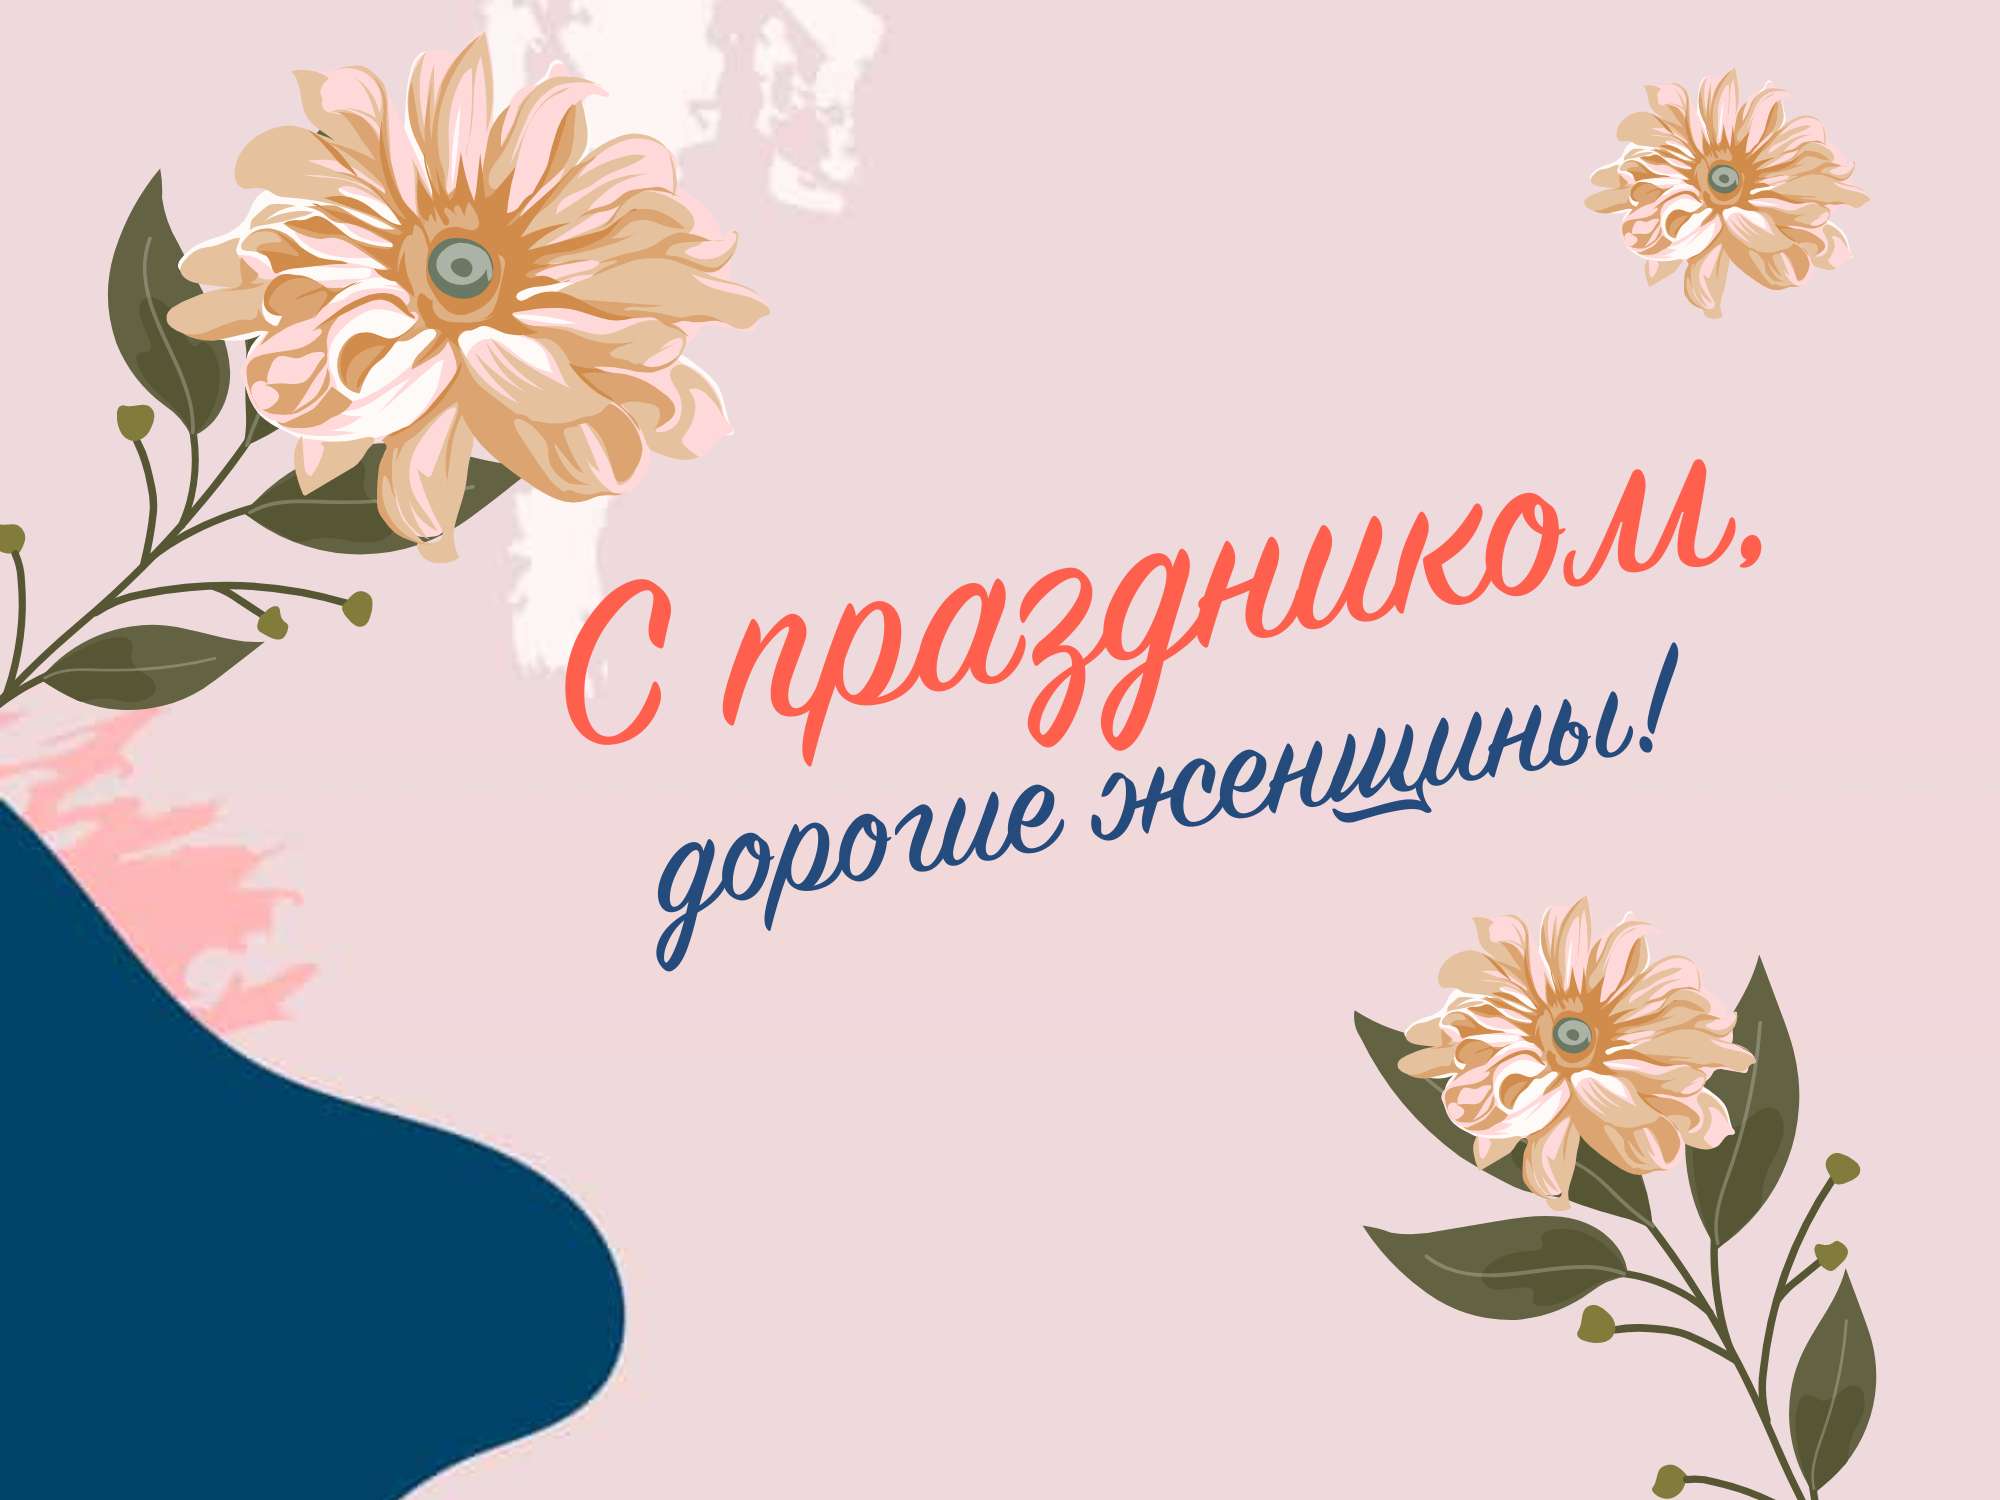 Симпатичный пост открытка с нарисованными цветами на светло-розовом фоне для поздравления с 8 марта